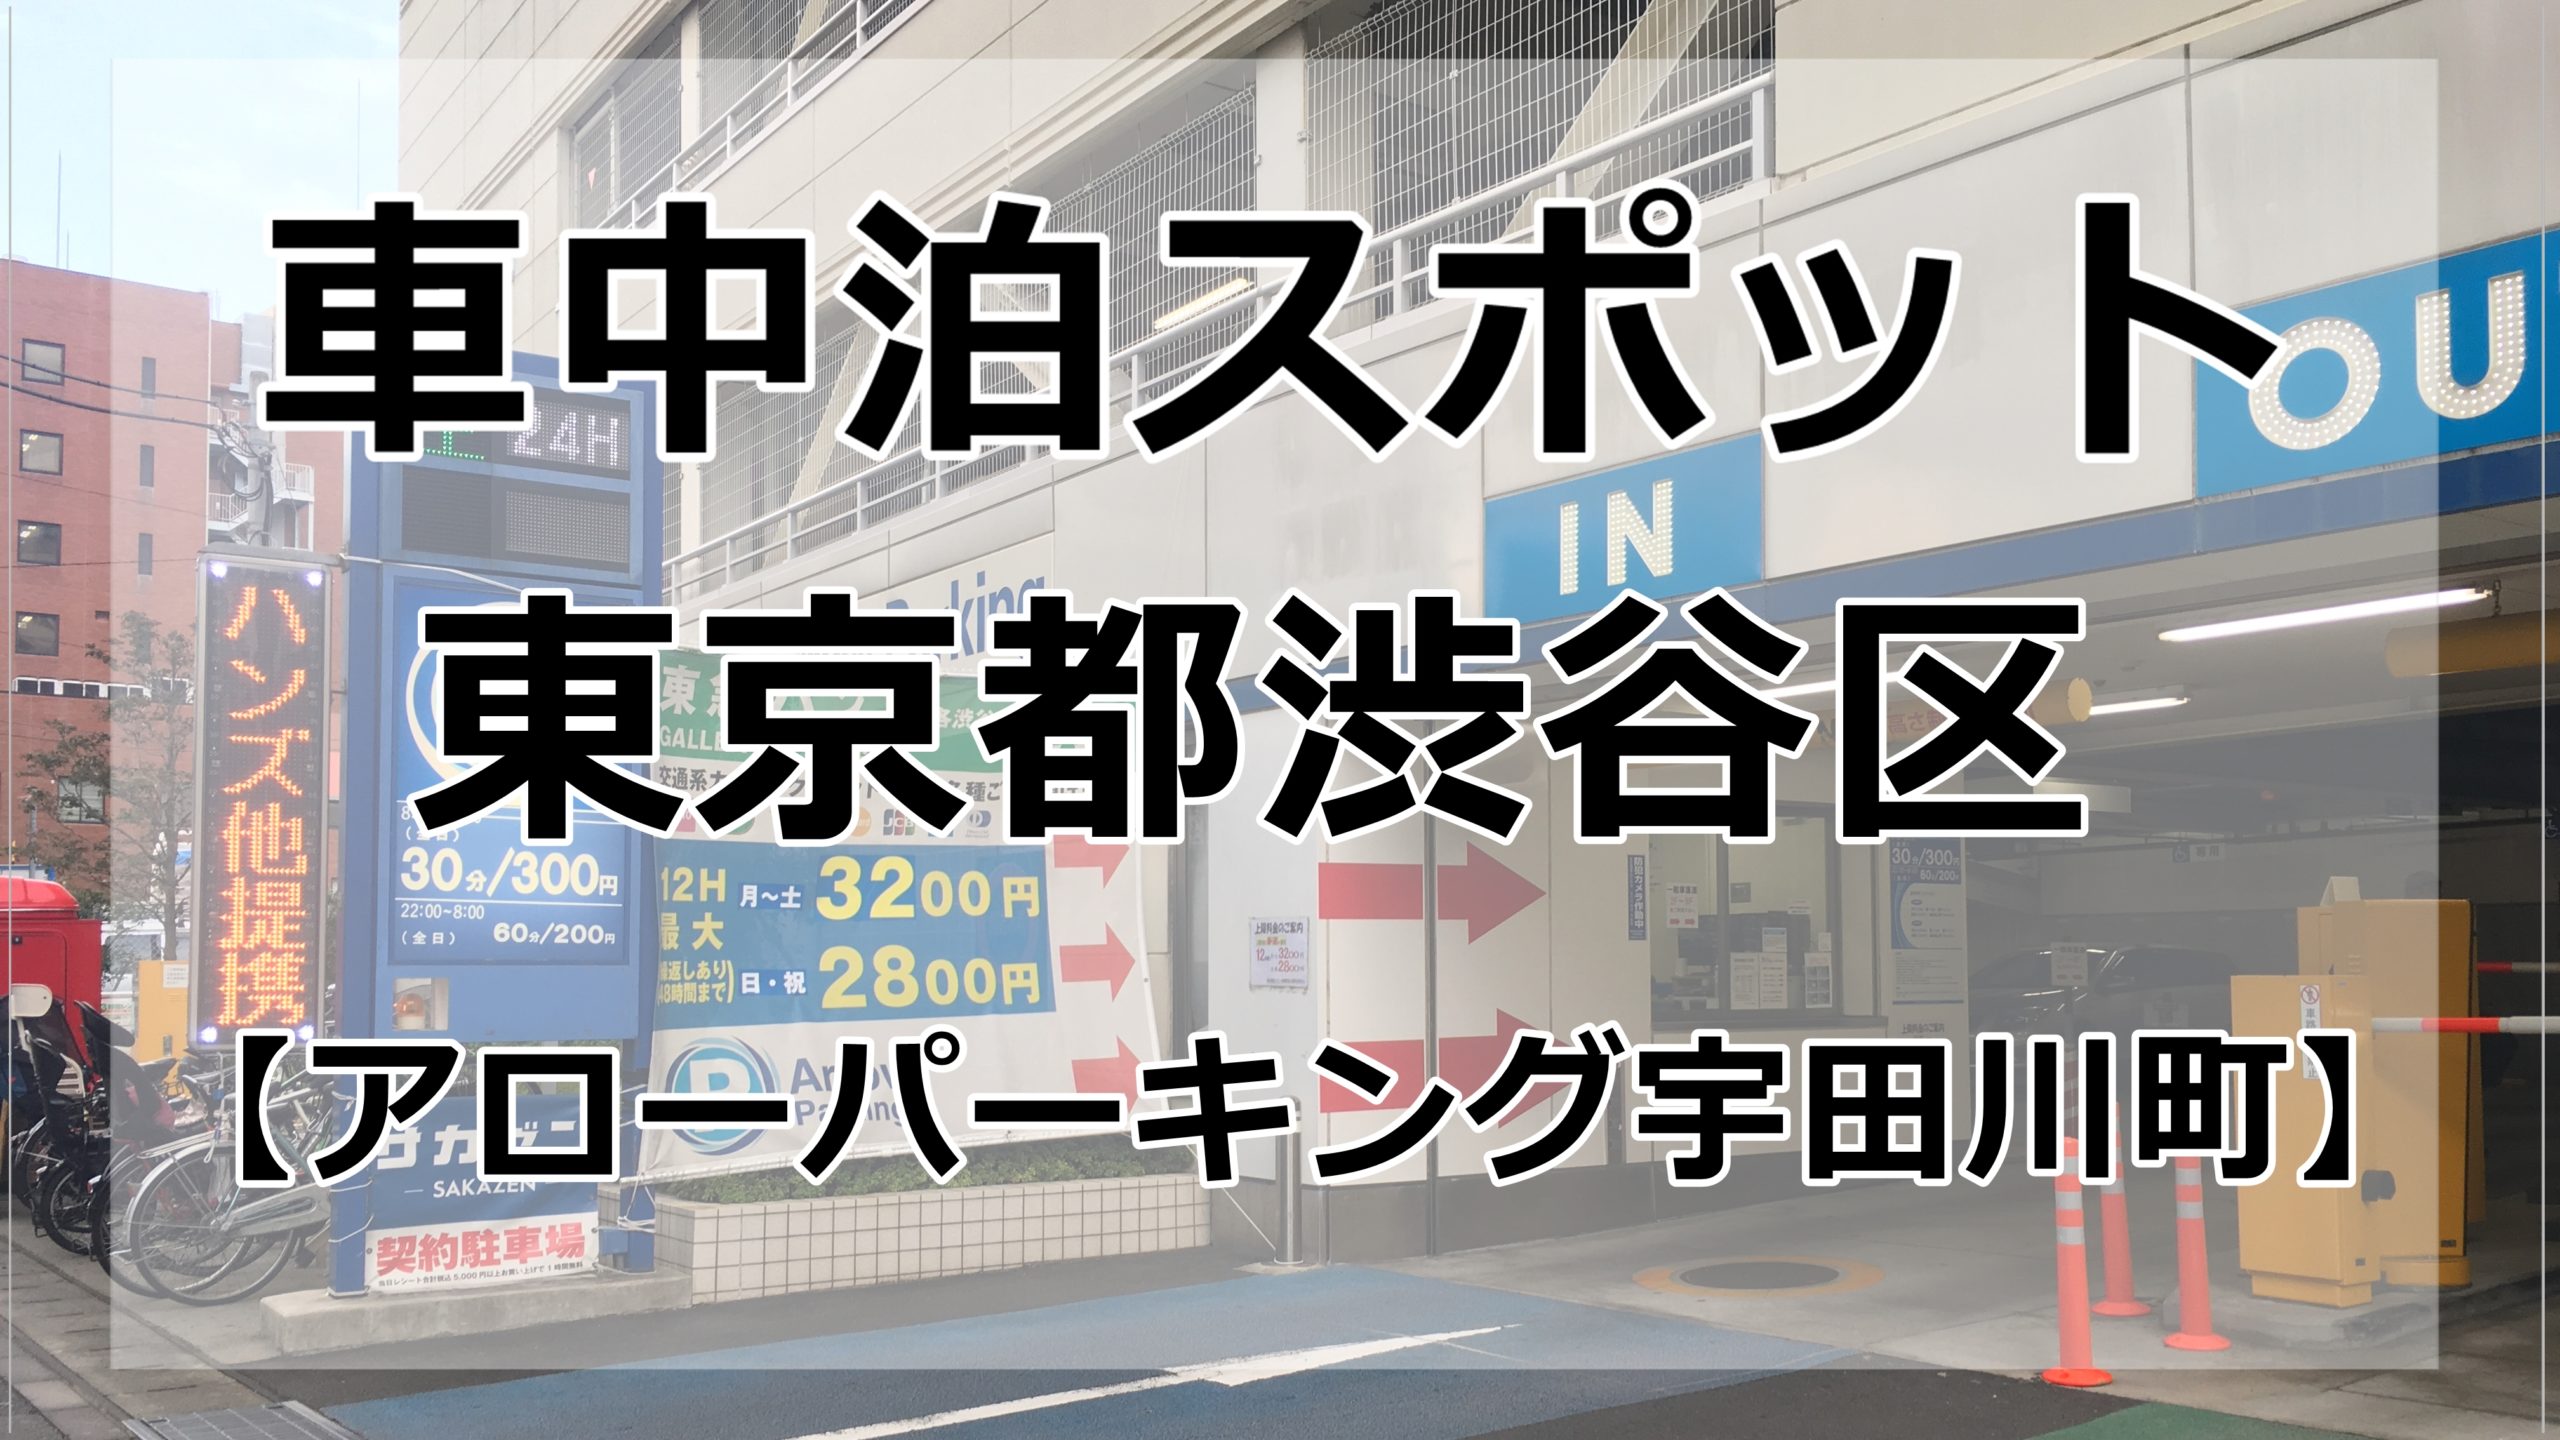 東京都内 渋谷で車中泊するならここのコインパーキングがおすすめ 車中泊女子 初心者向けバンライフブログ